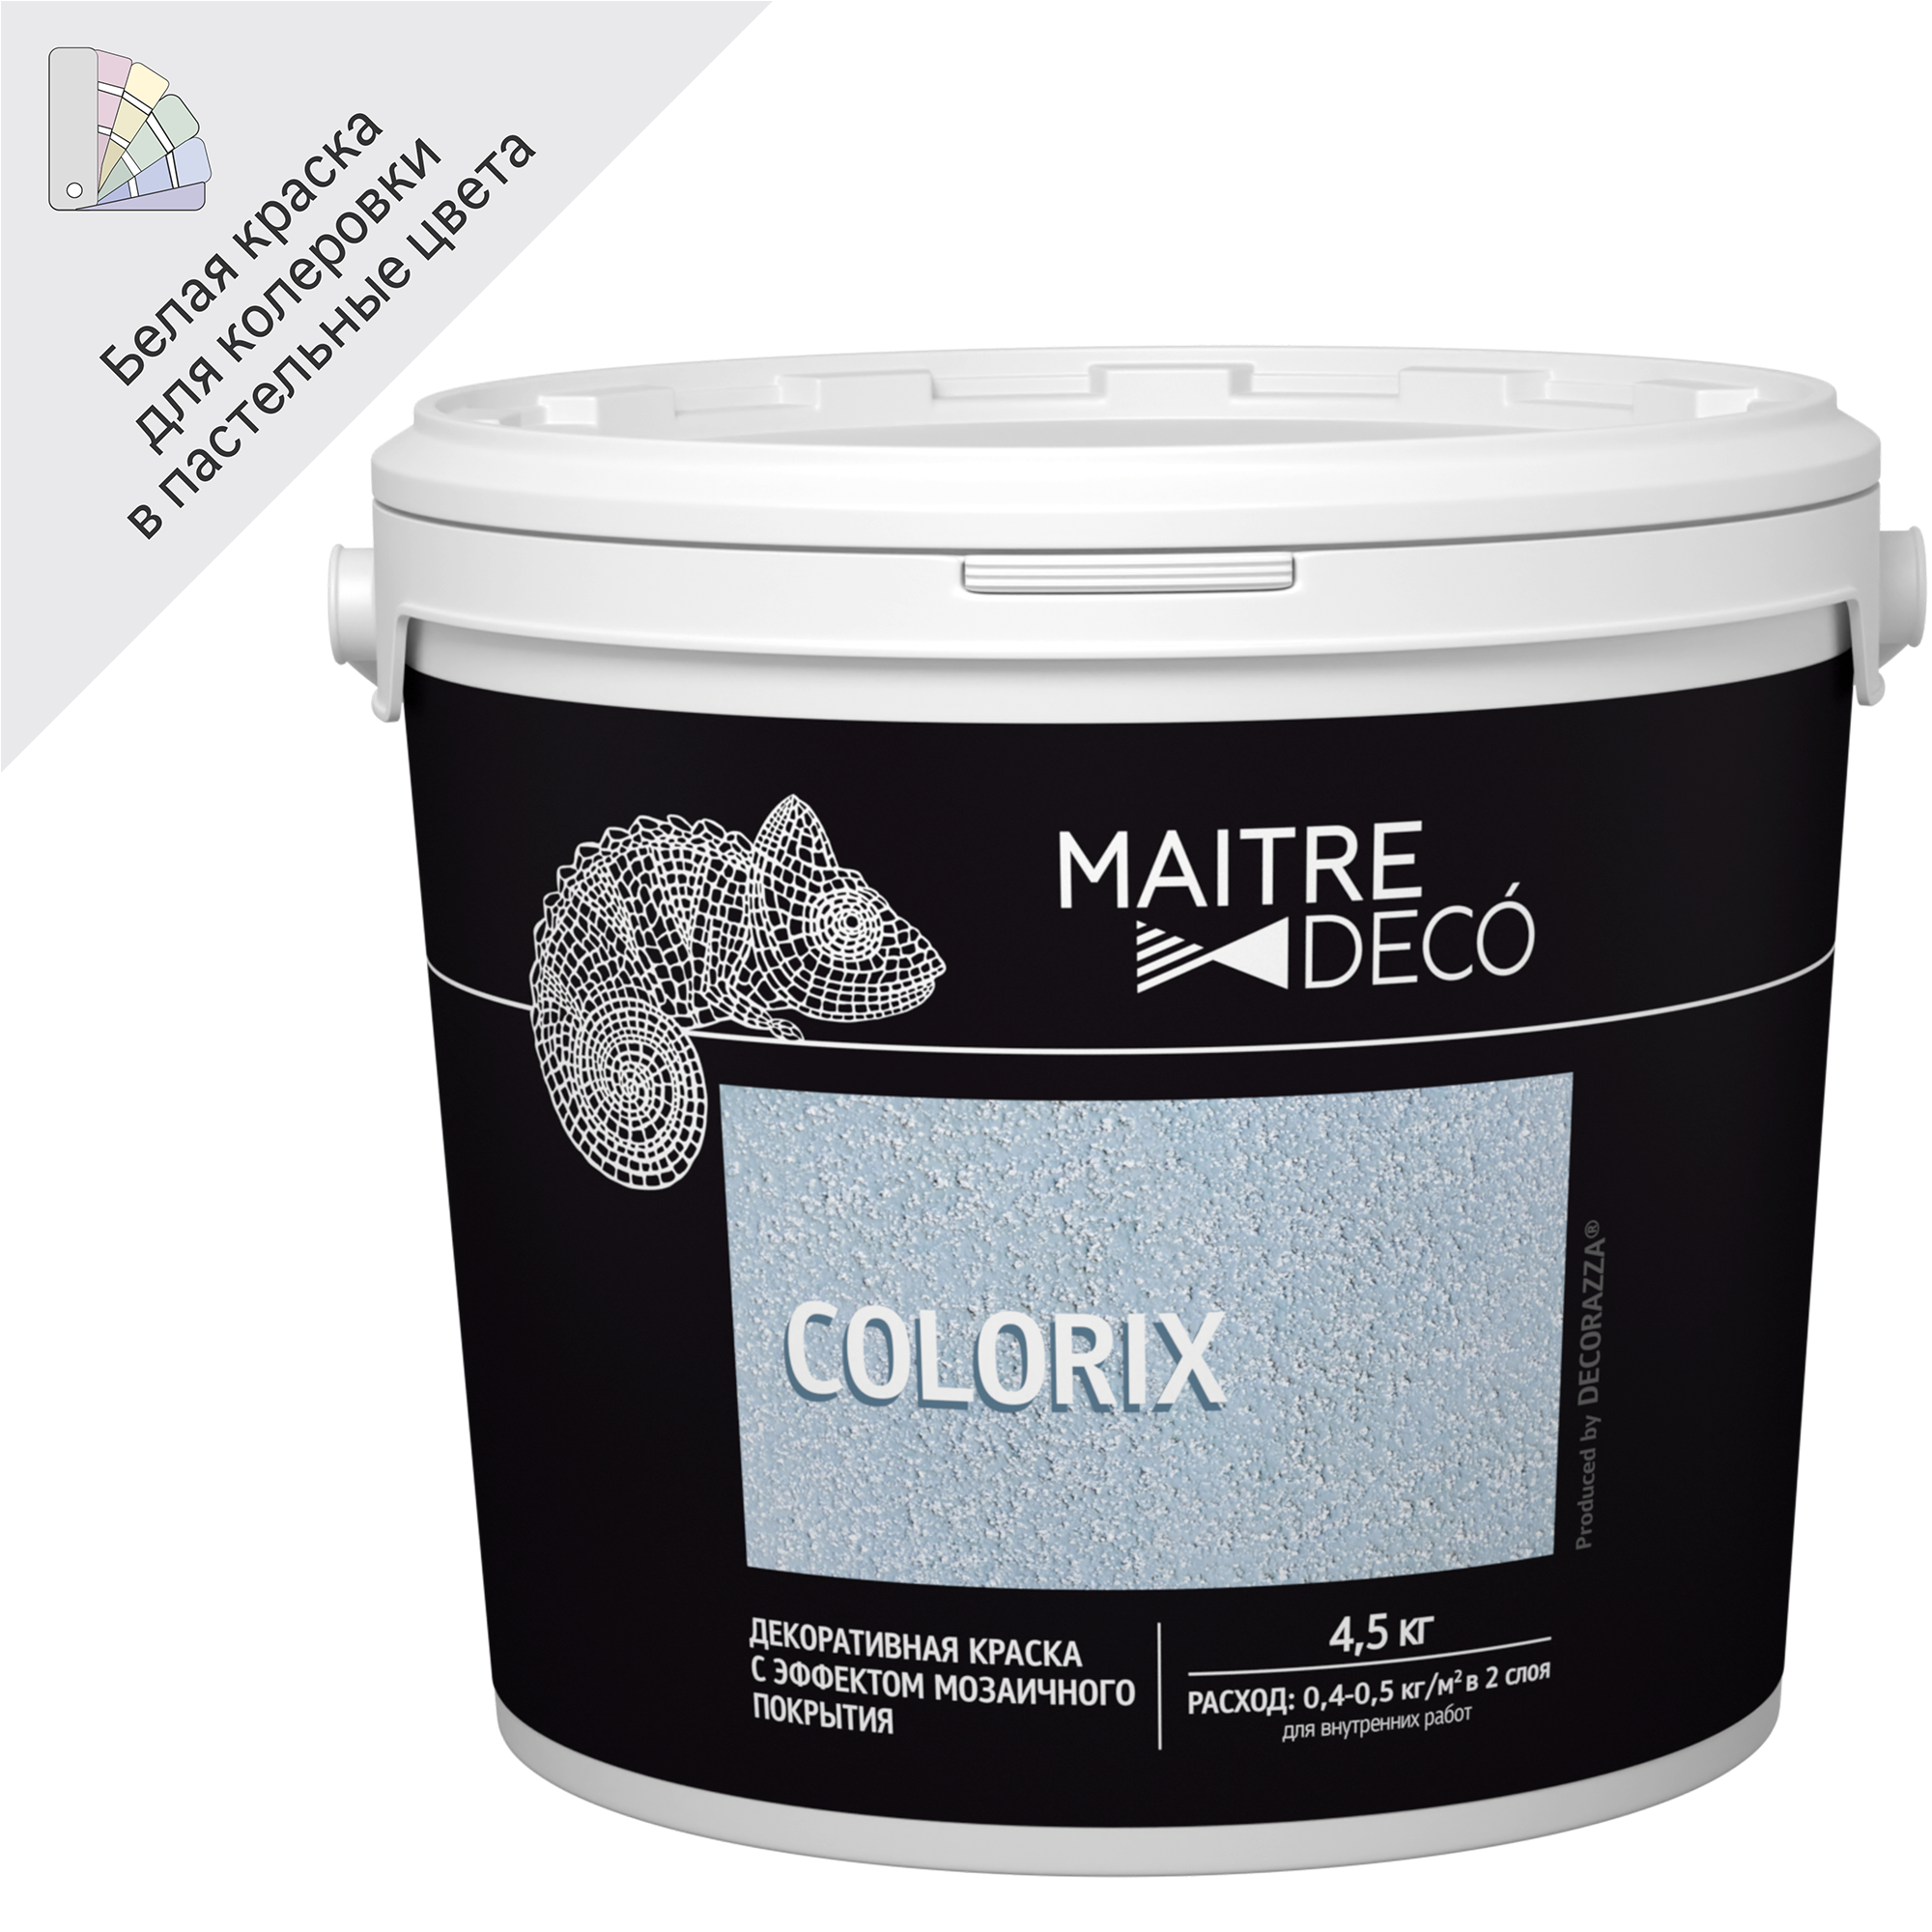 83262260 Декоративная краска Colorix с эффектом мозаичного покрытия 4.5 кг STLM-0040010 MAITRE DECO